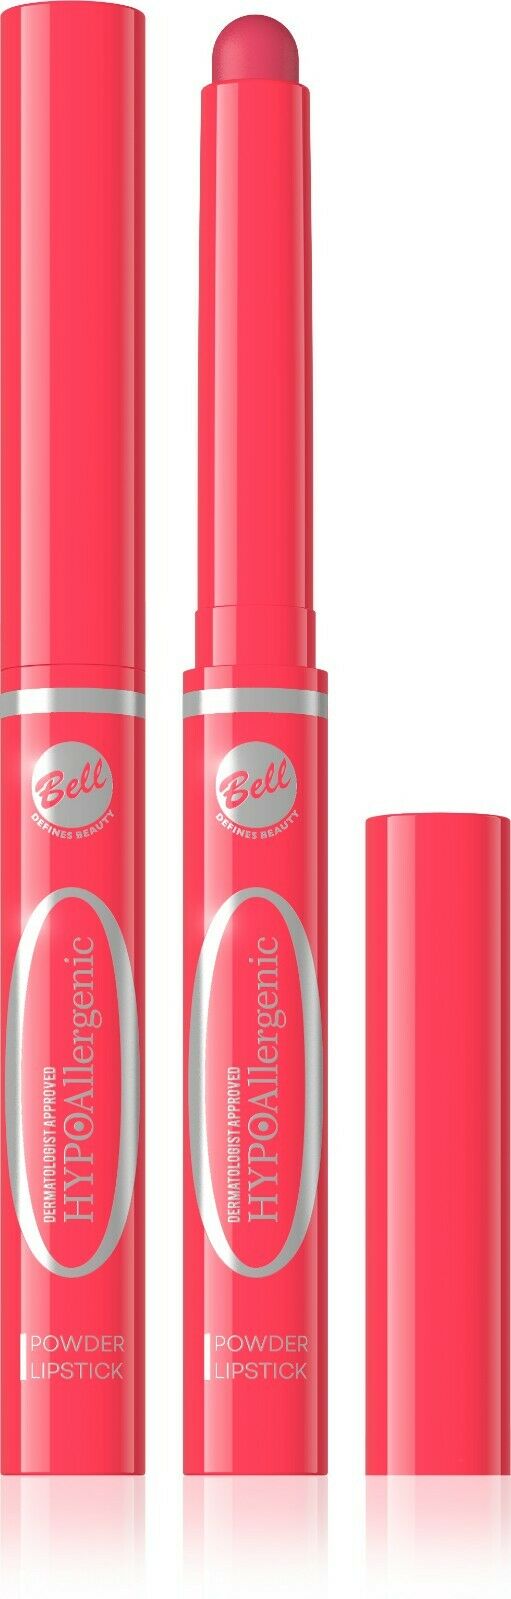 Bell Hypoallergenic Powder Lipstick 05